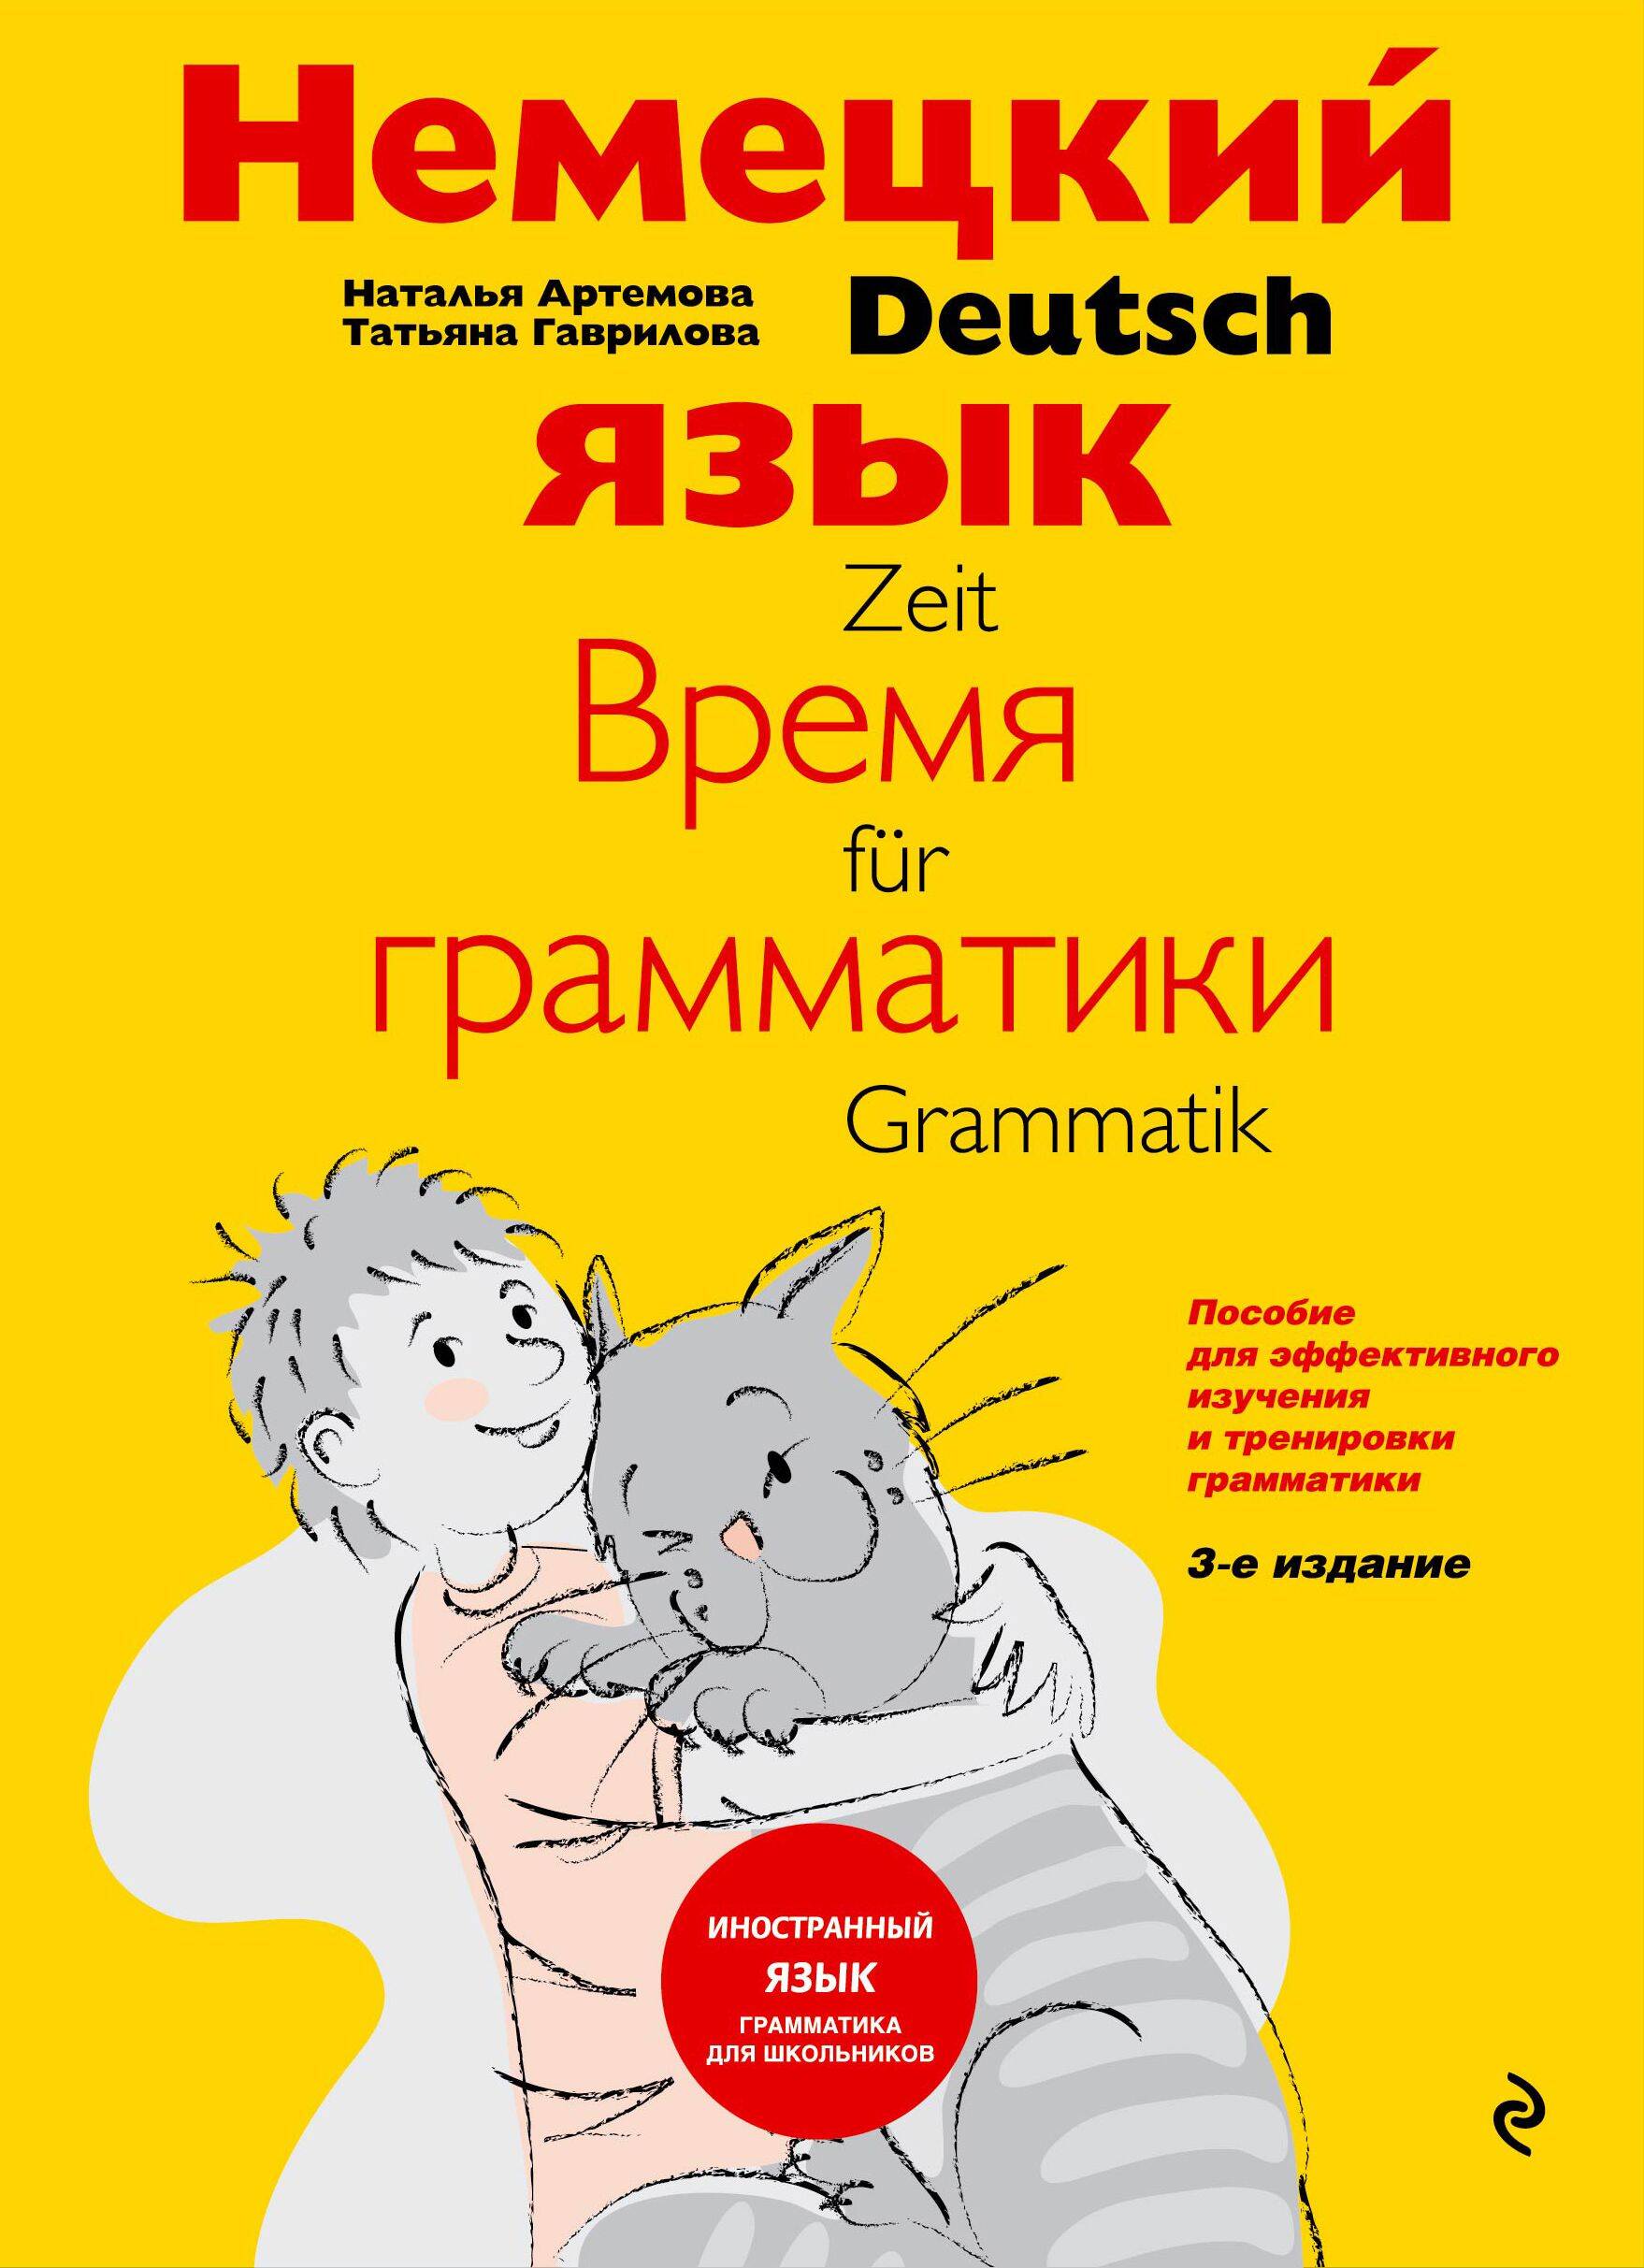 Немецкий язык: время грамматики. Пособие для эффективного изучения и тренировки грамматики для младших школьников. 3-е издание